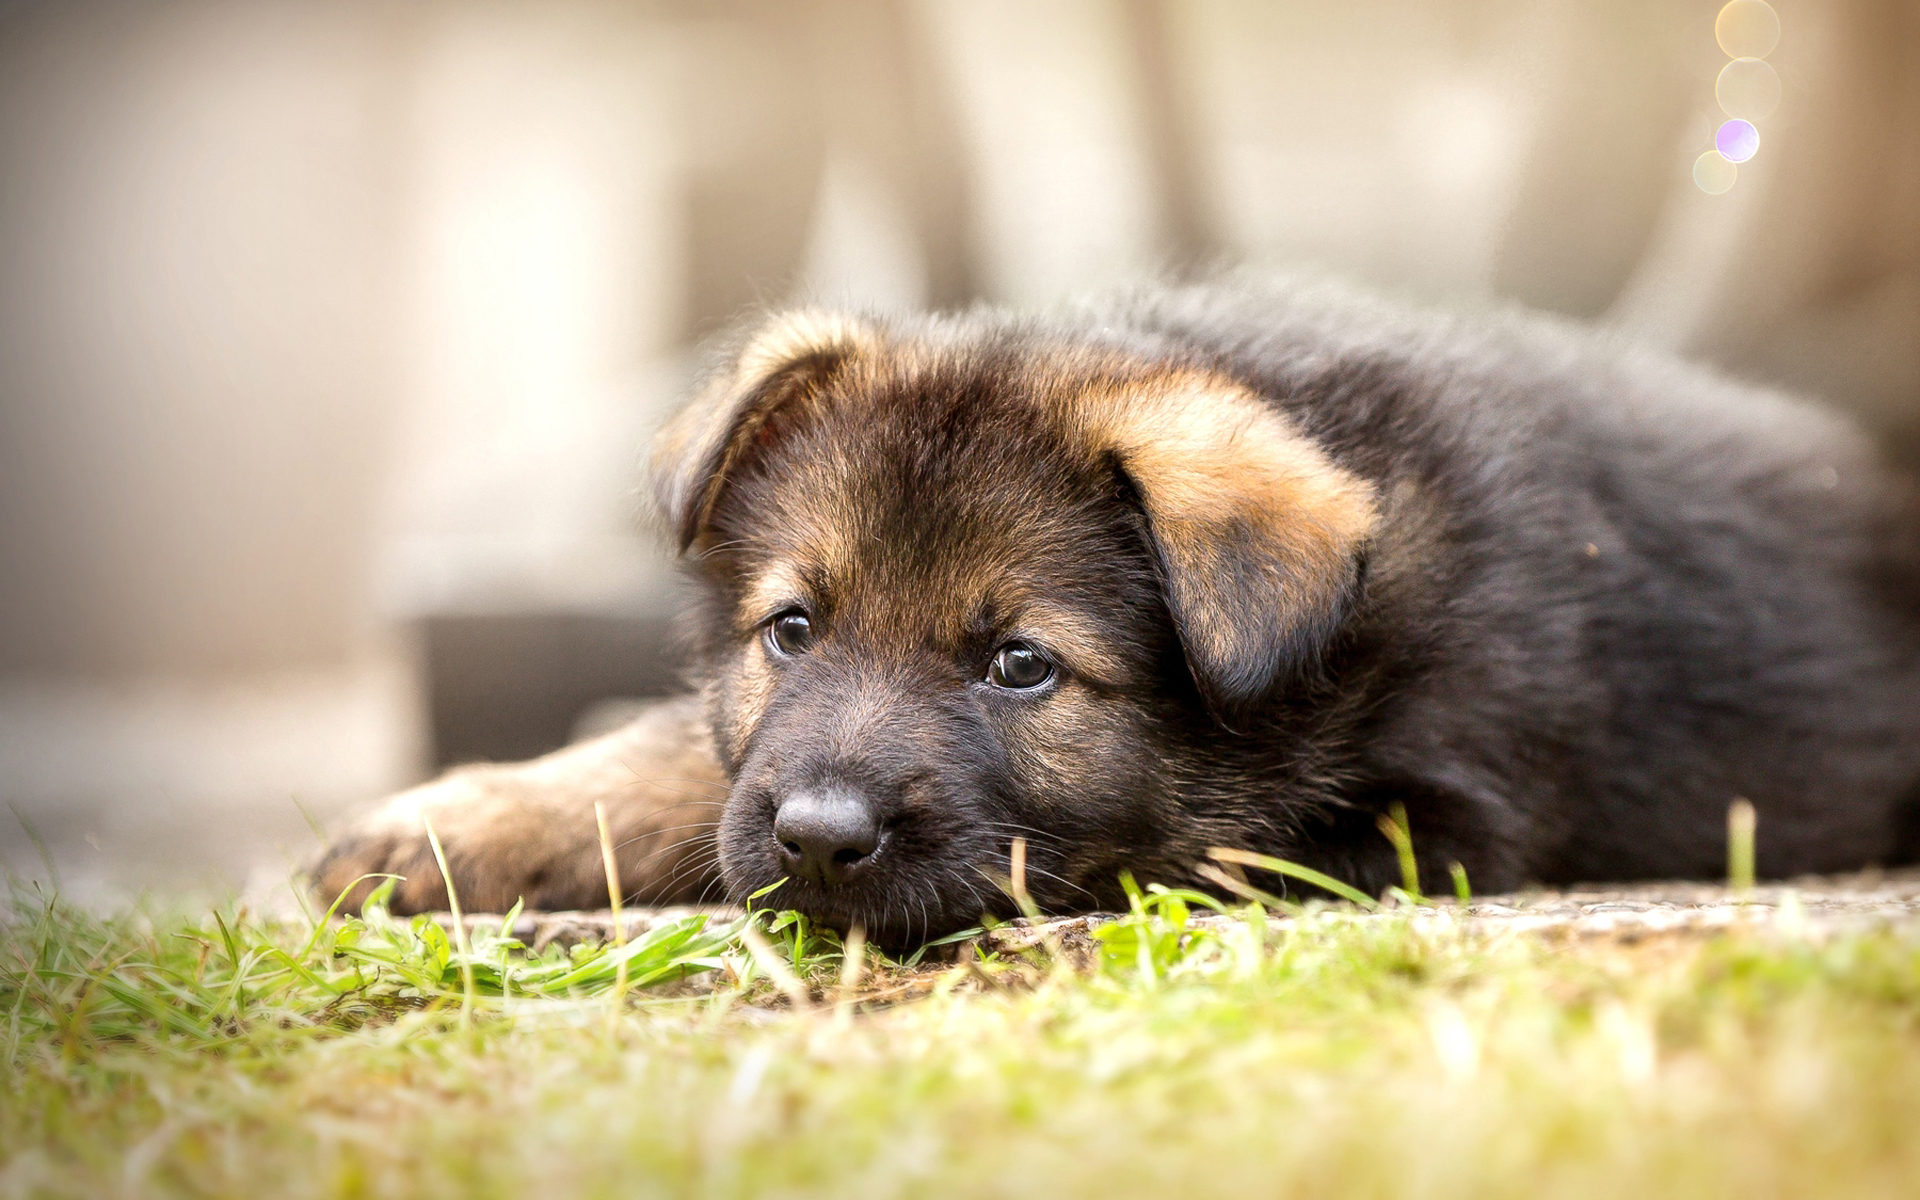 ダウンロード画像 ドイツの羊飼い 近 子犬 かわいい動物たち 犬 ボケ ジャーマンシェパードドッグ ペット 画面の解像度 19x10 壁紙デスクトップ上